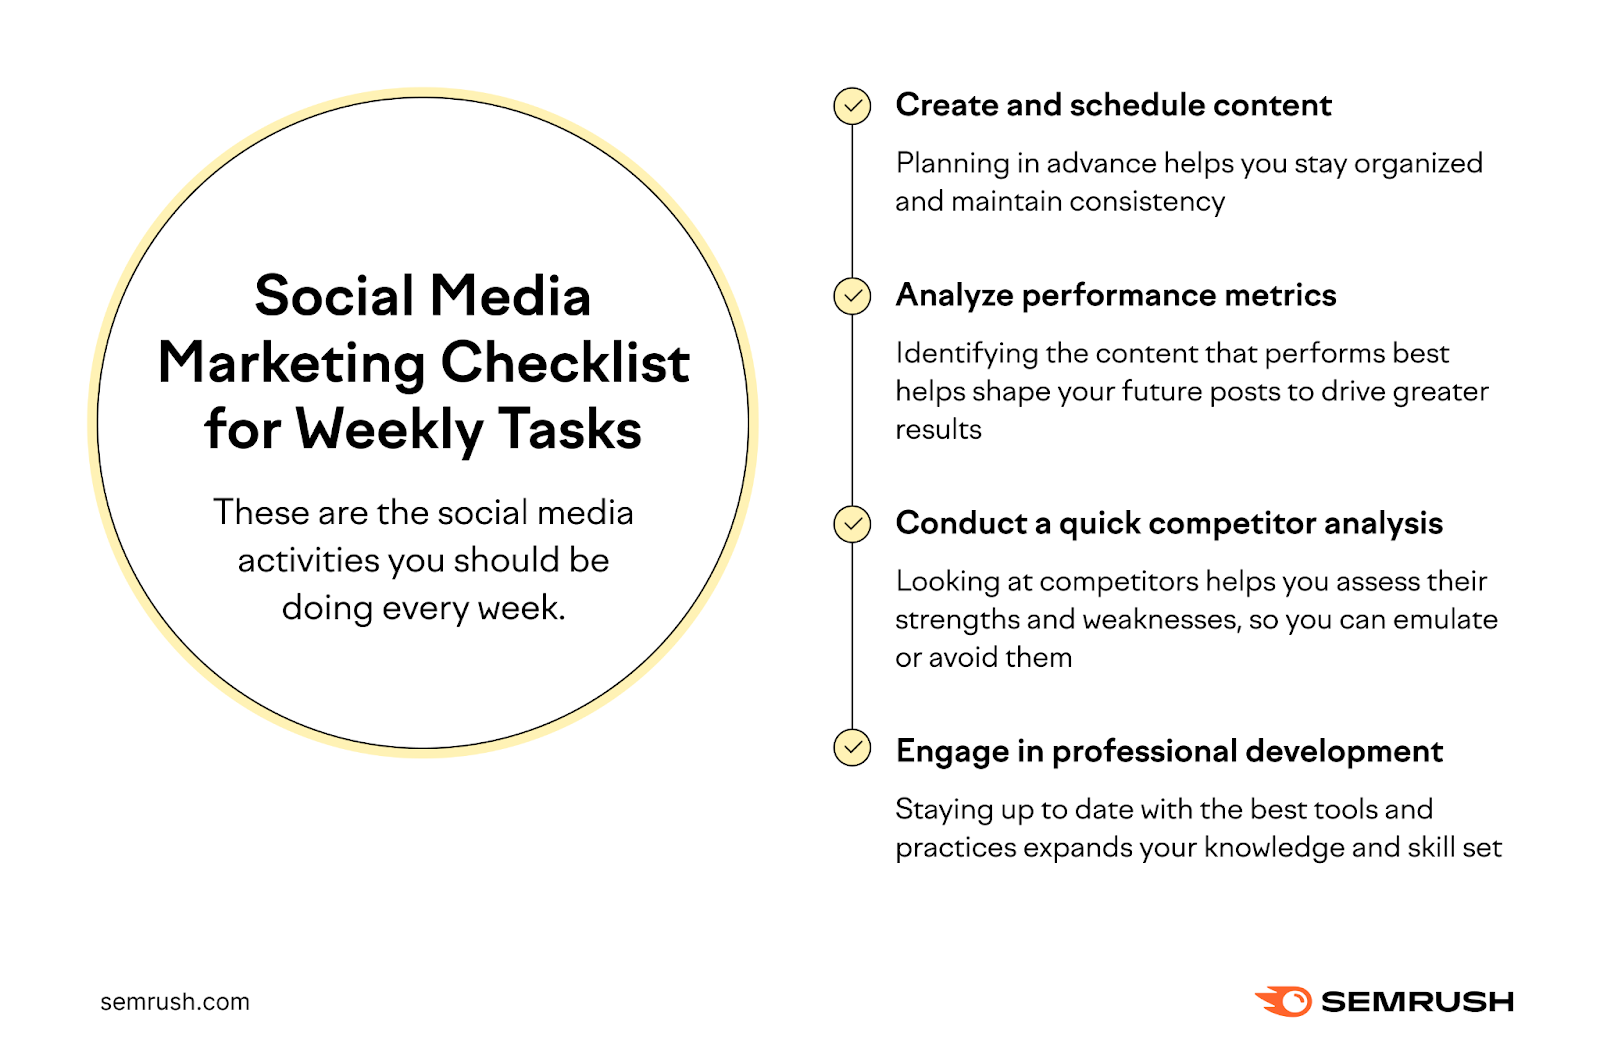 Social media marketing checklist for weekly tasks